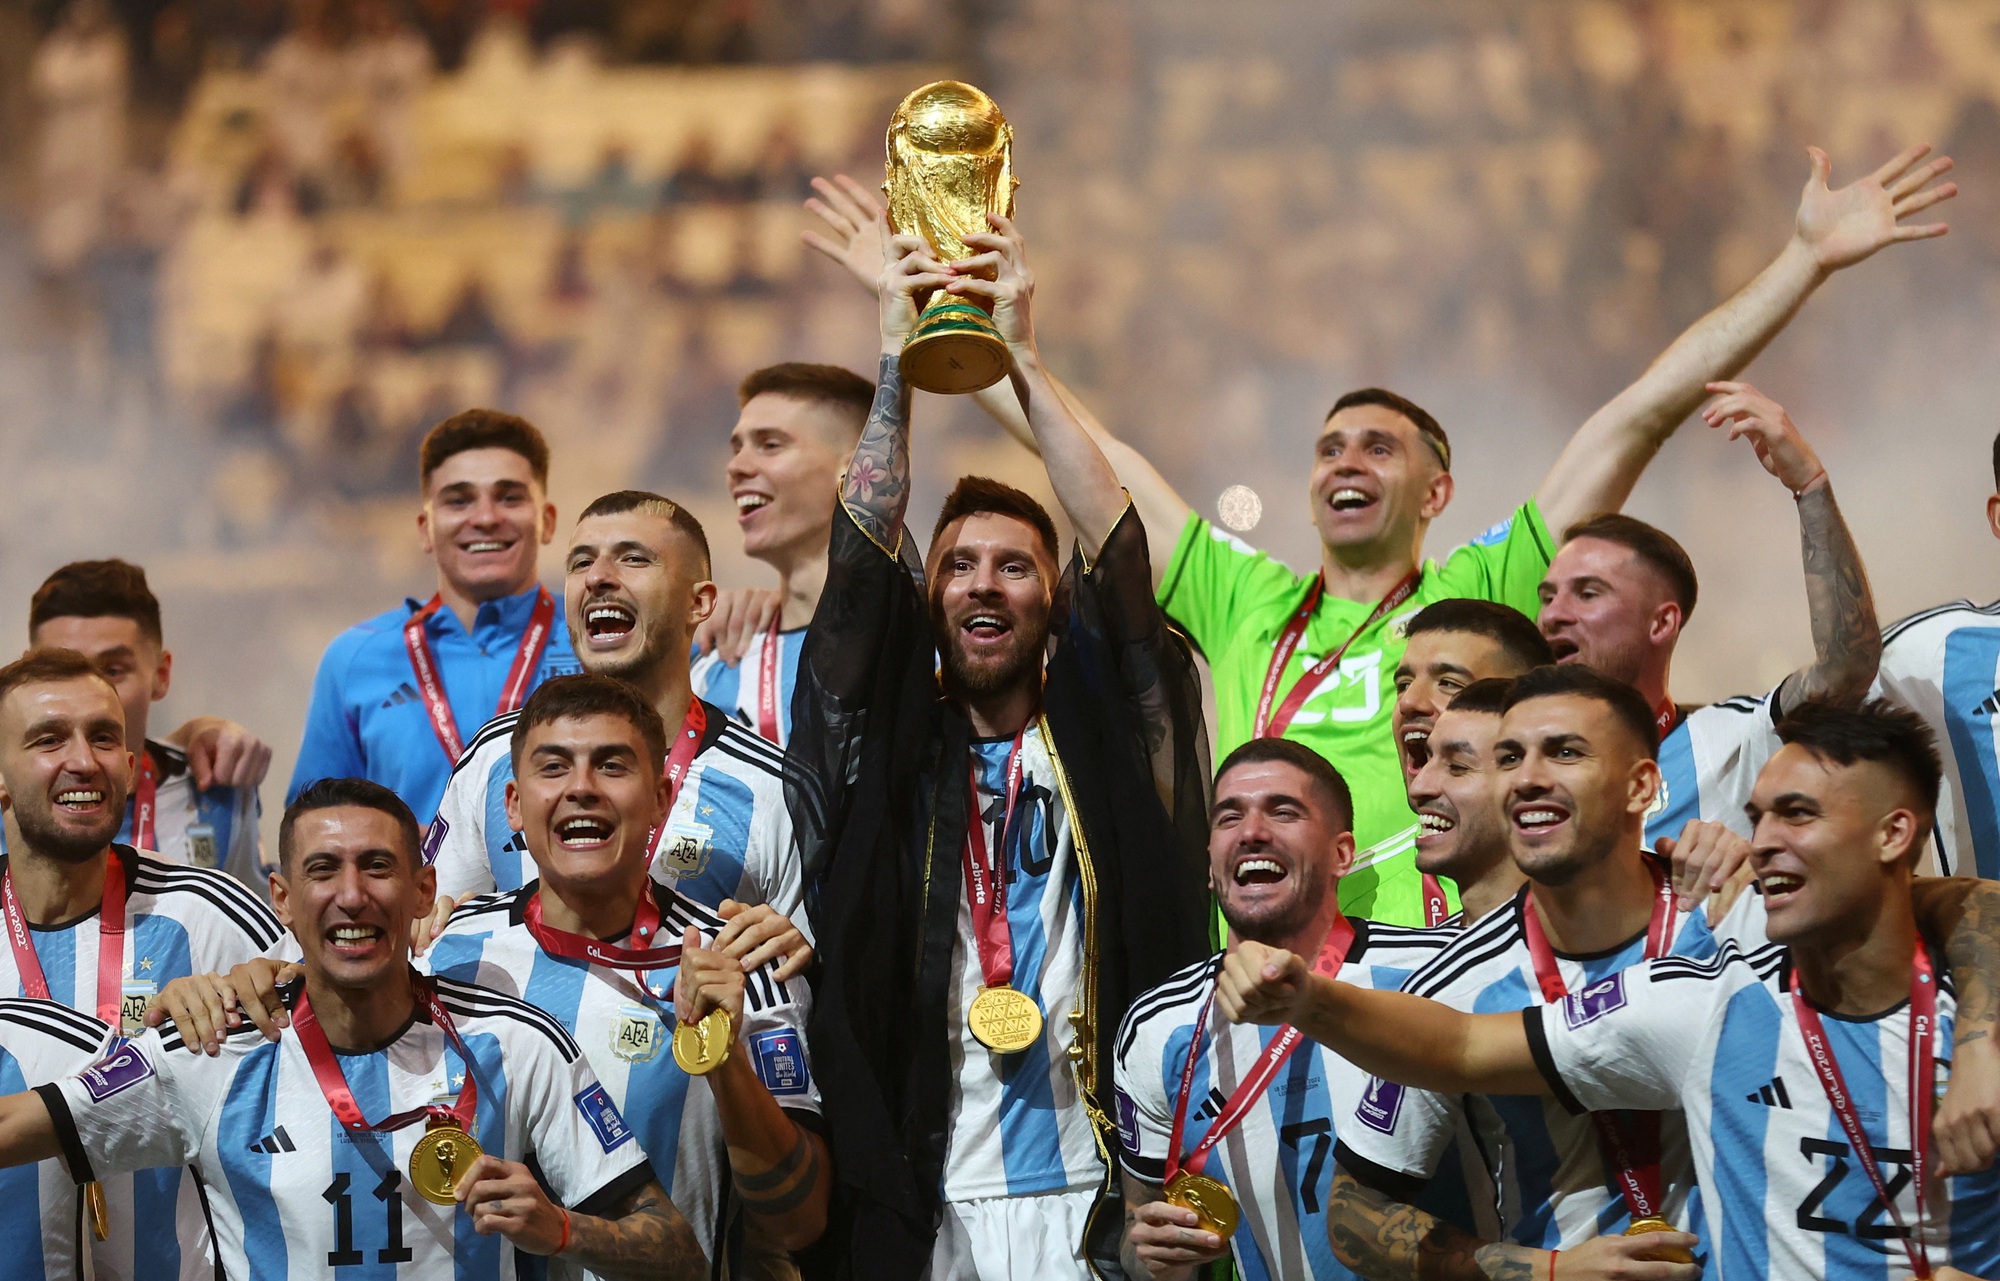 Messi và vụ cãi vã tại buổi lễ ăn mừng Argentina sau khi vô địch World Cup! Chưa từng có chi tiết nào được công bố như vậy trước đó. Xem hình ảnh để biết thêm chi tiết.